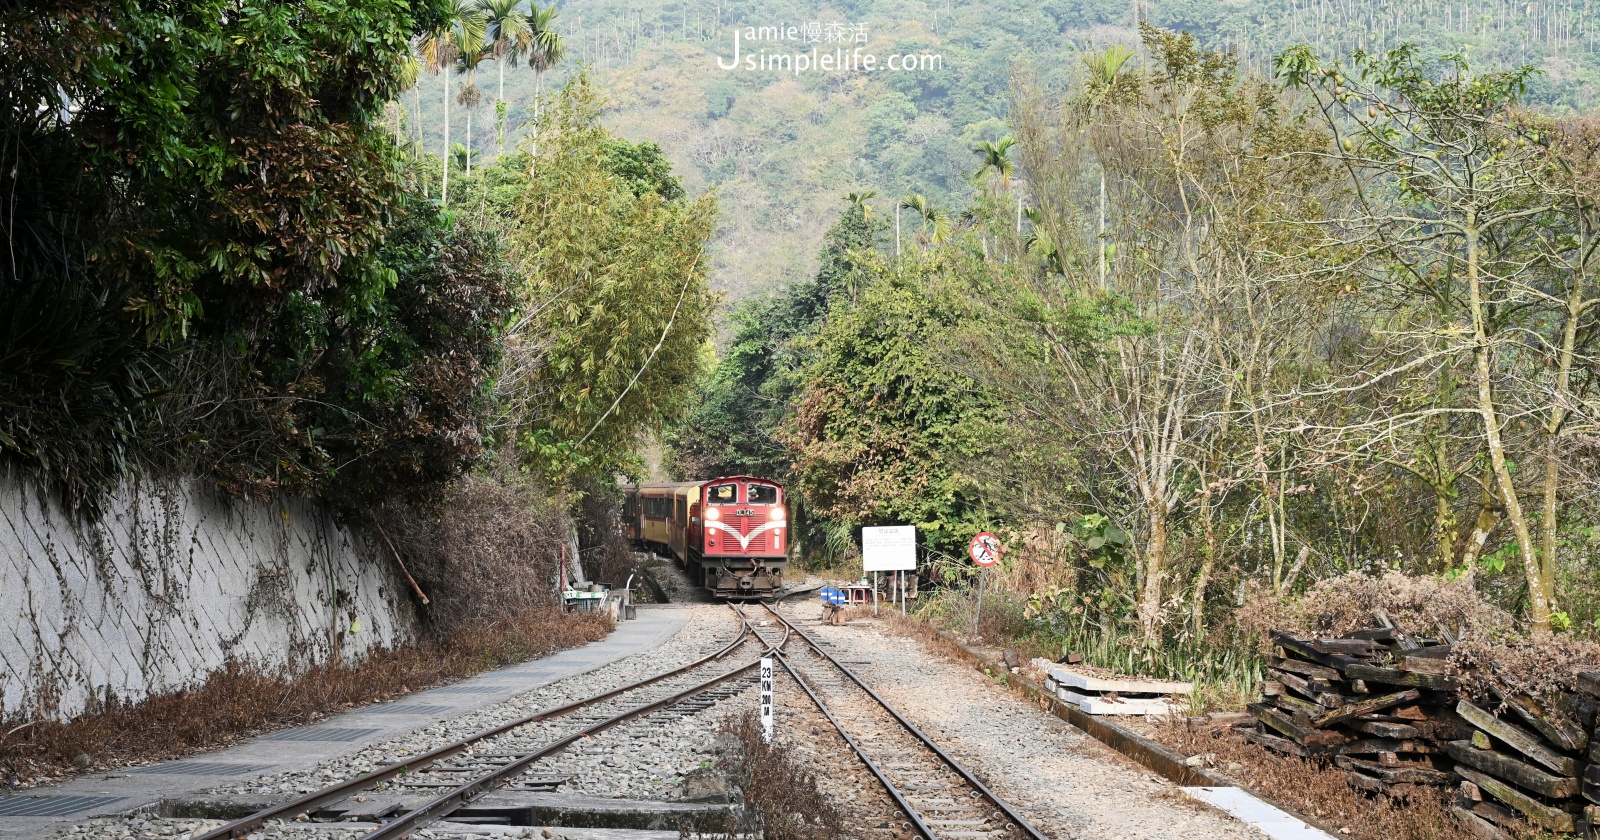 嘉義阿里山小火車，前進秘境車站、世界文化遺產鐵道「獨立山」 「阿里山」小火車、公車搭乘資訊